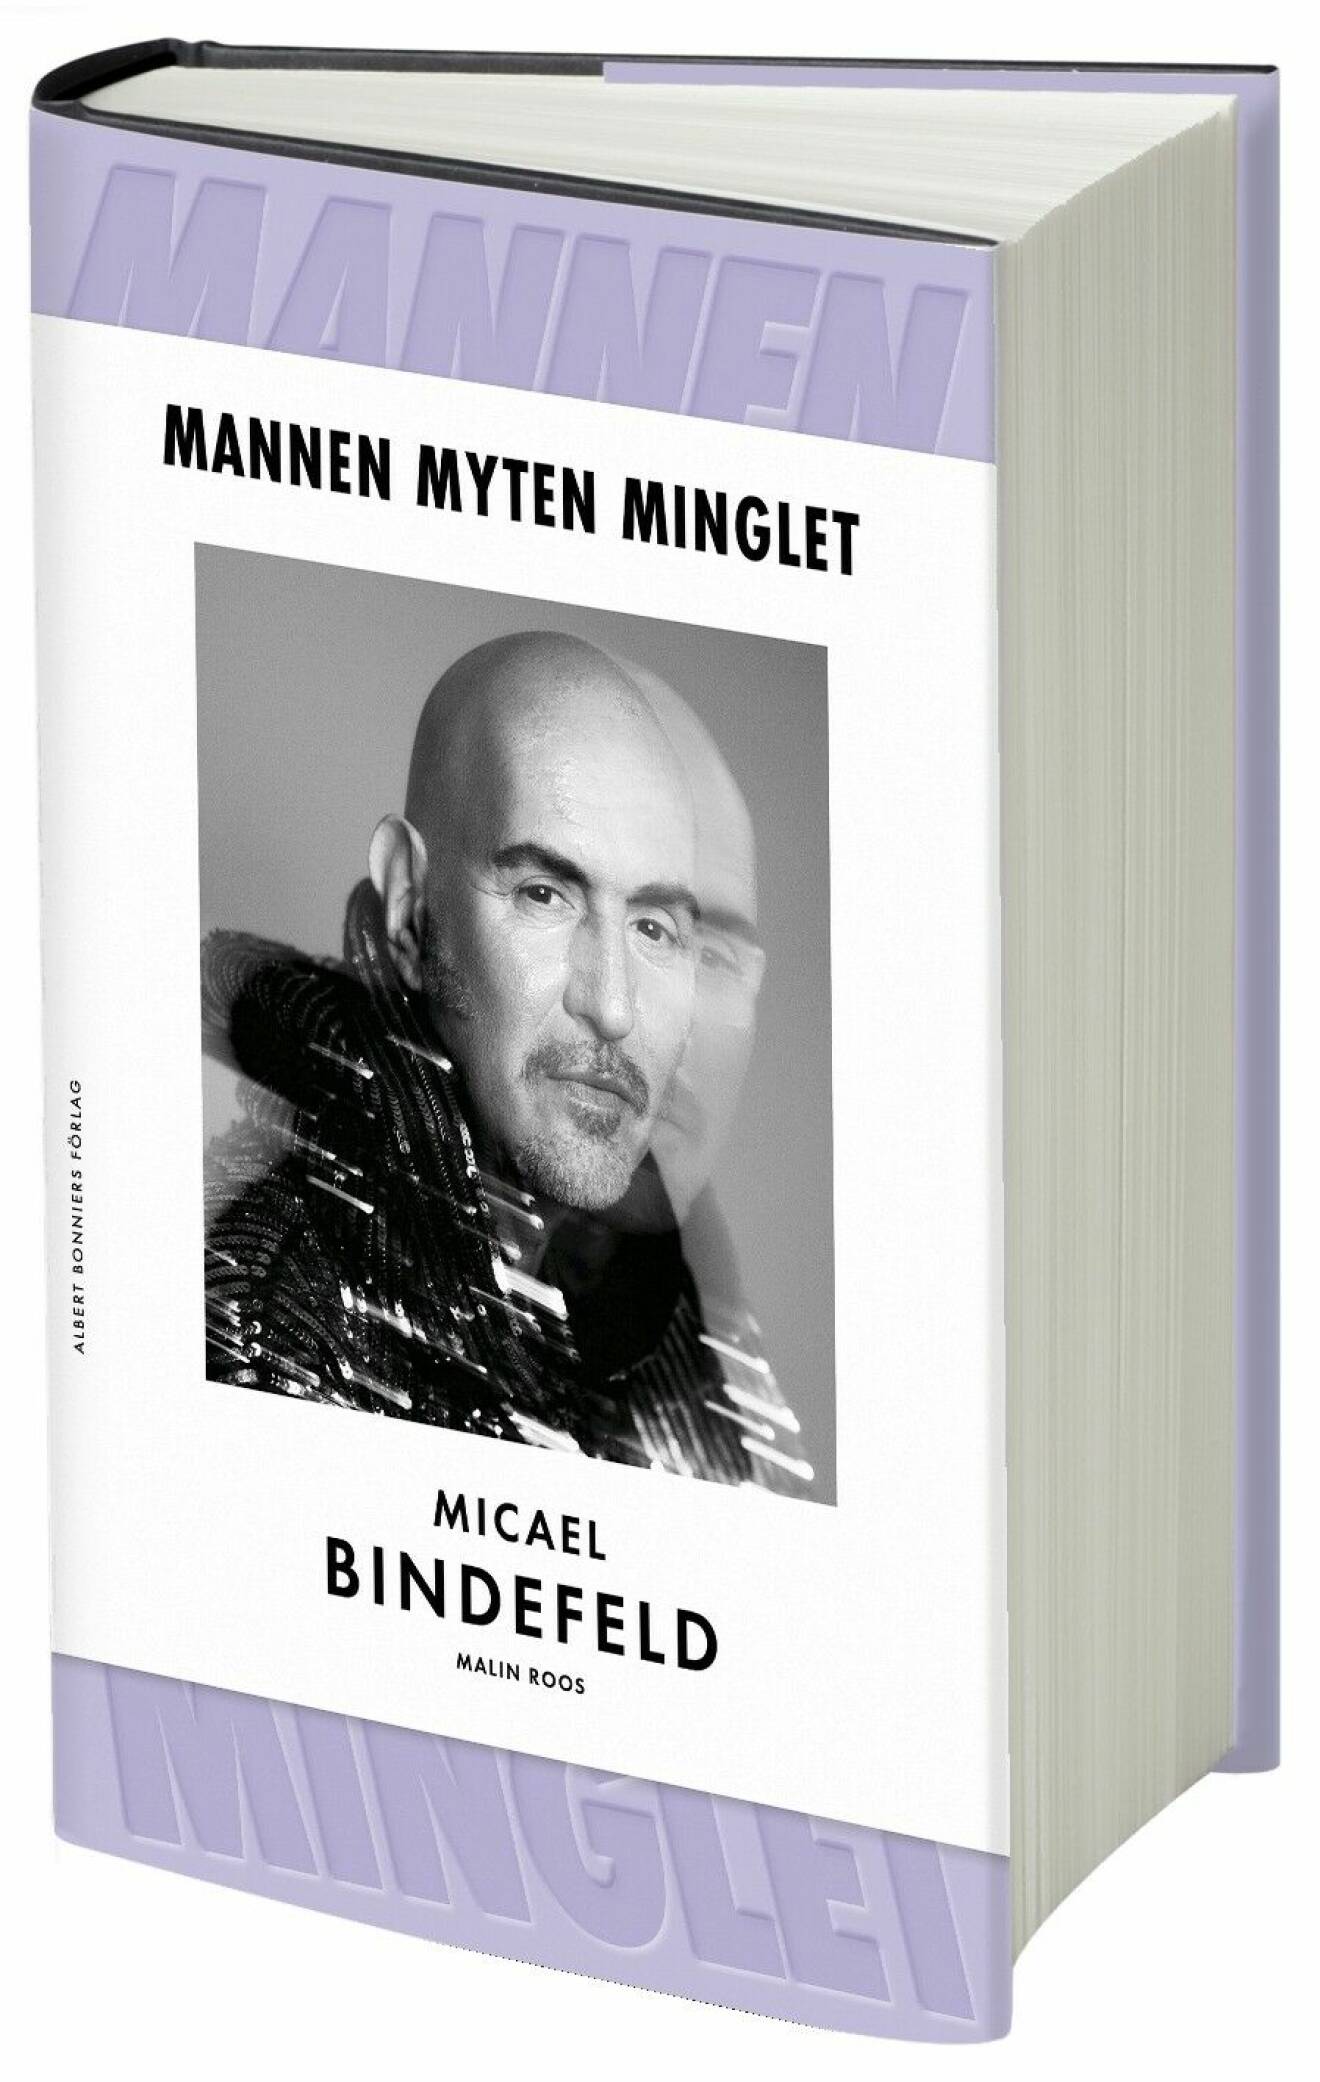 Mannen Myten Minglet av Micael Bindefeld, Malin Roos.